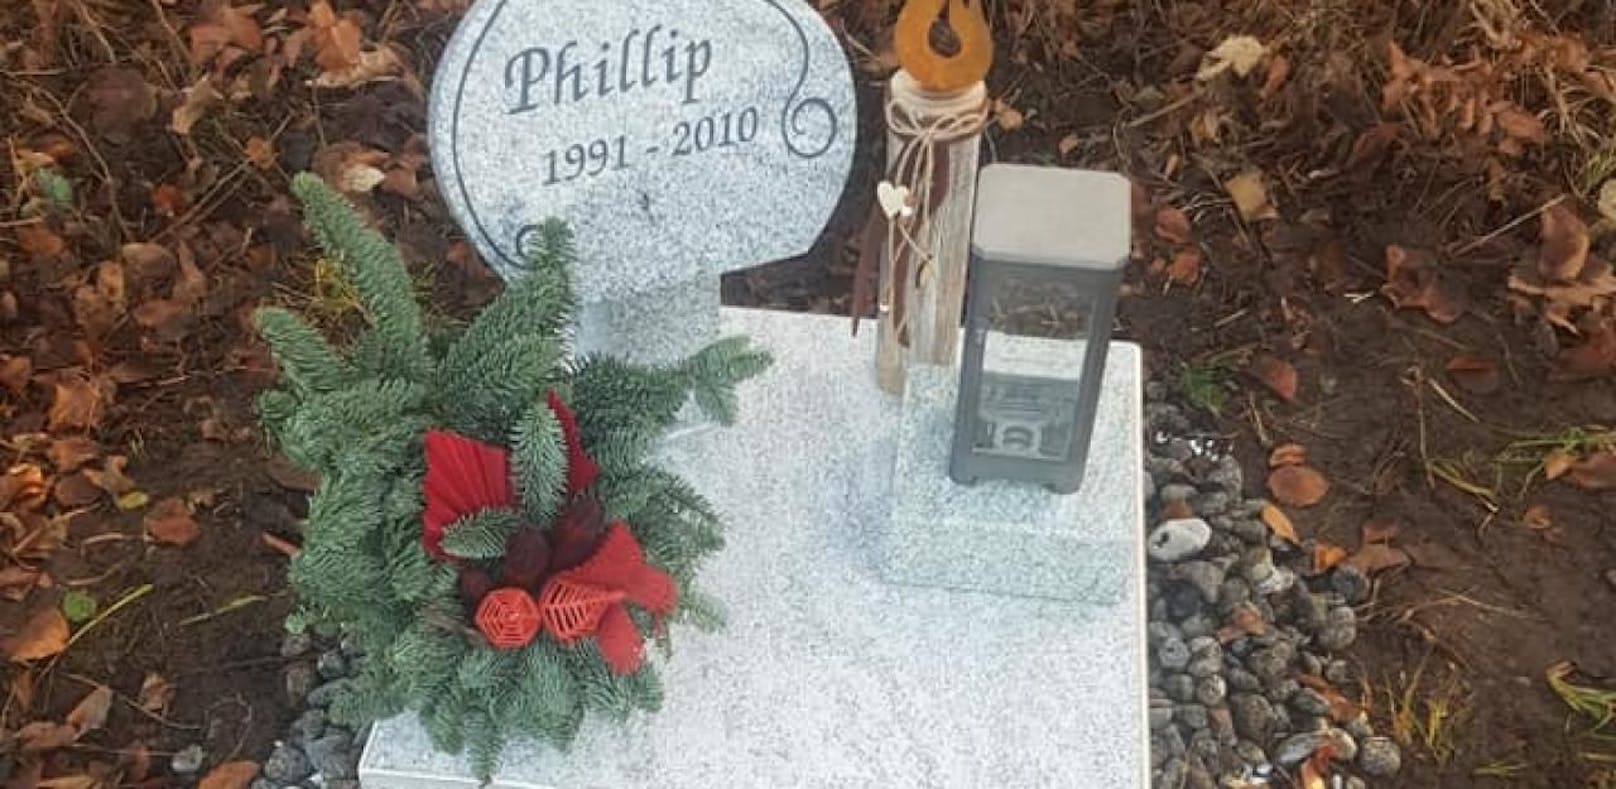 Wer hat Gedenkstein für toten Phillip gestohlen?